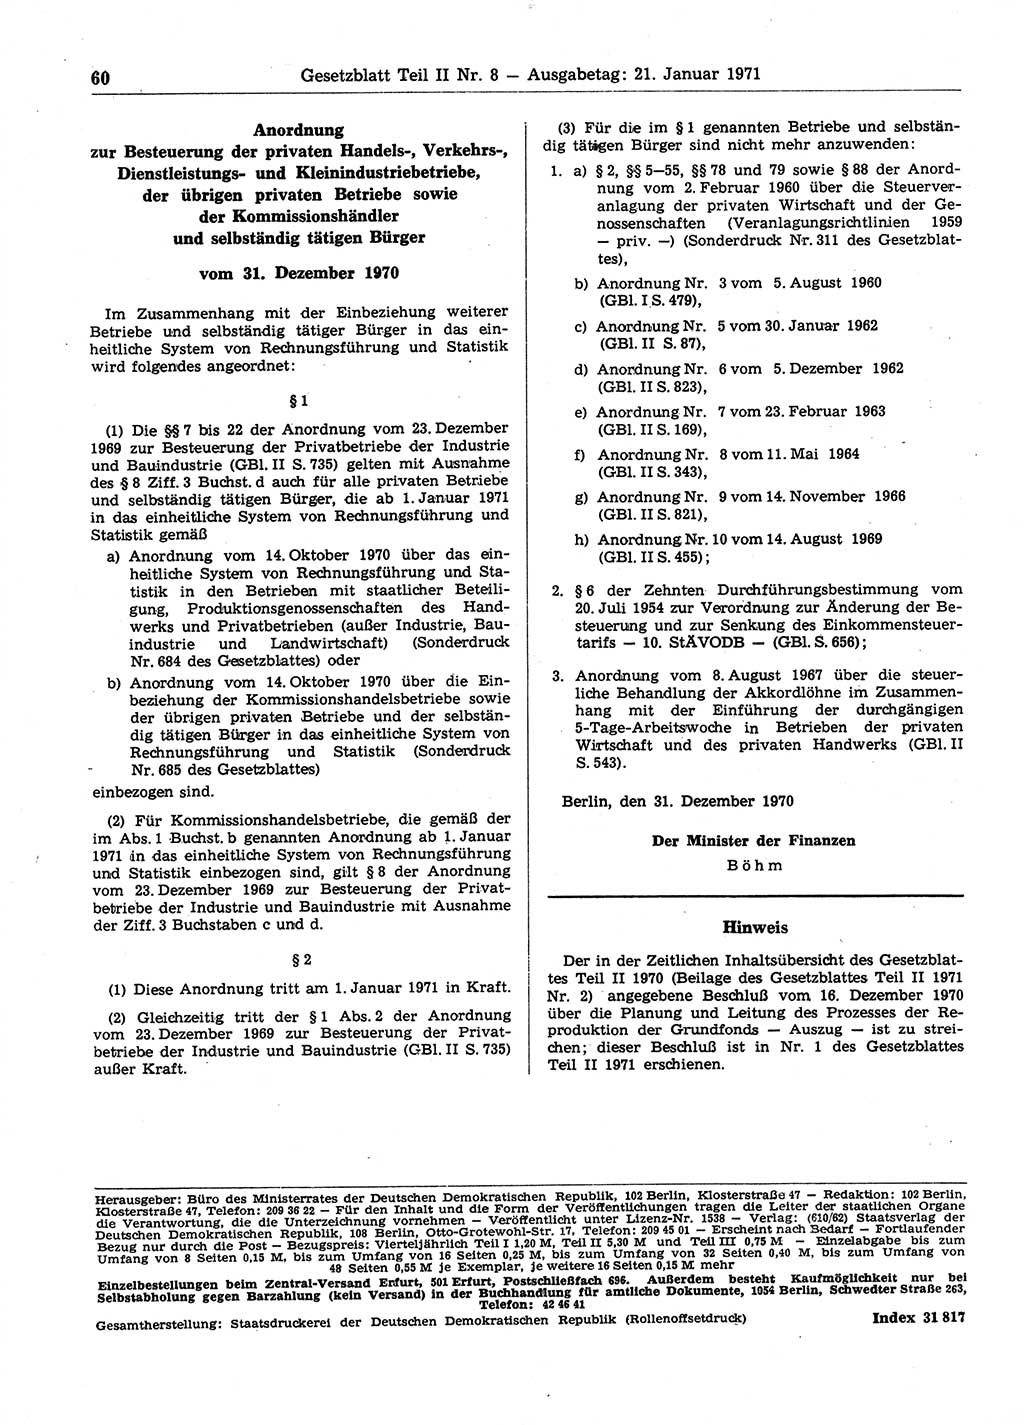 Gesetzblatt (GBl.) der Deutschen Demokratischen Republik (DDR) Teil ⅠⅠ 1971, Seite 60 (GBl. DDR ⅠⅠ 1971, S. 60)